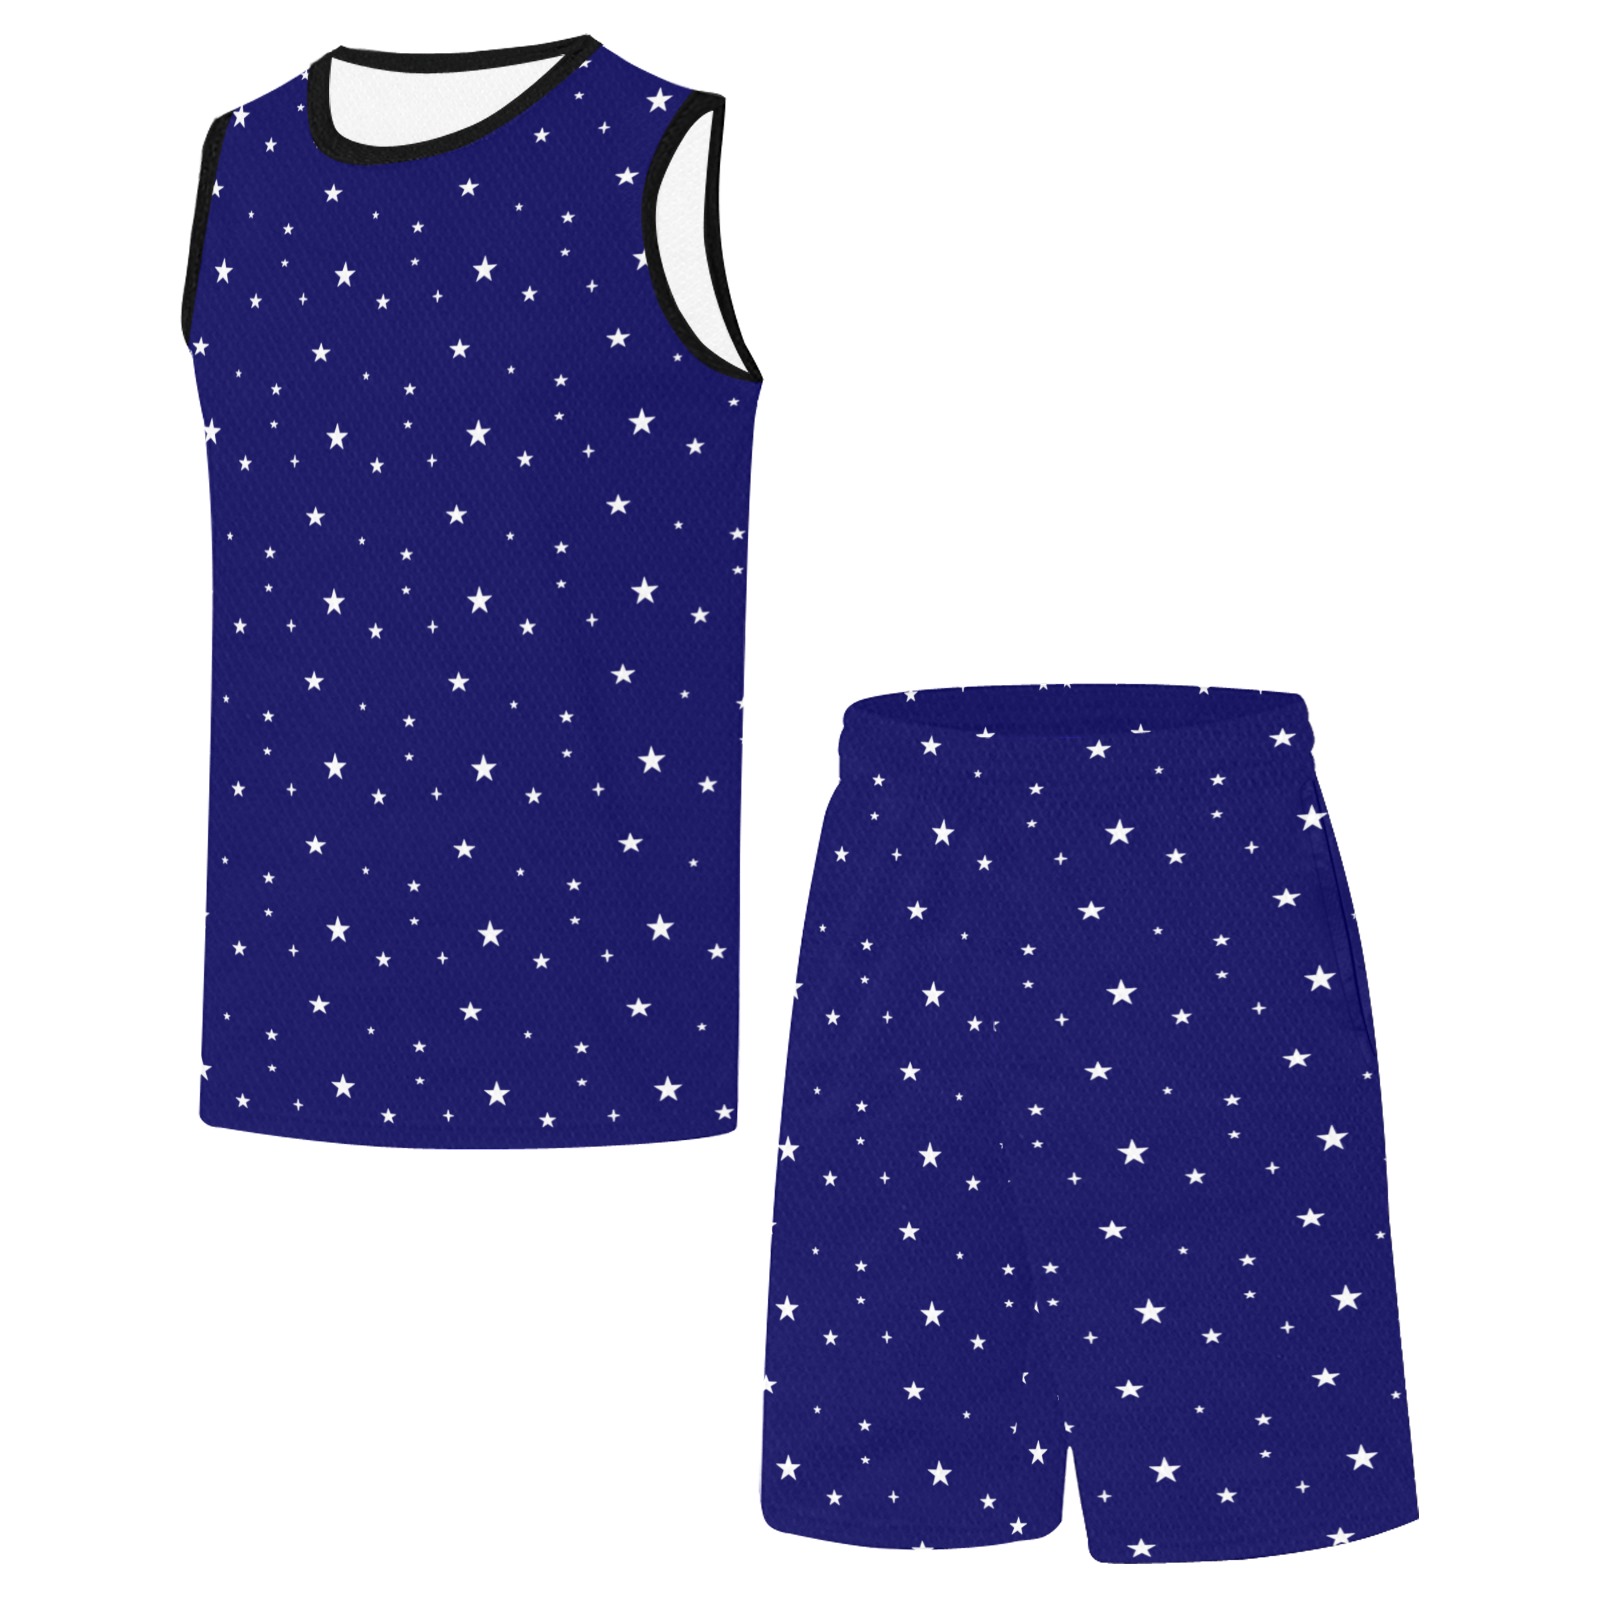 imgonline-com-ua-tile-4D0hlboh5WP Basketball Uniform with Pocket